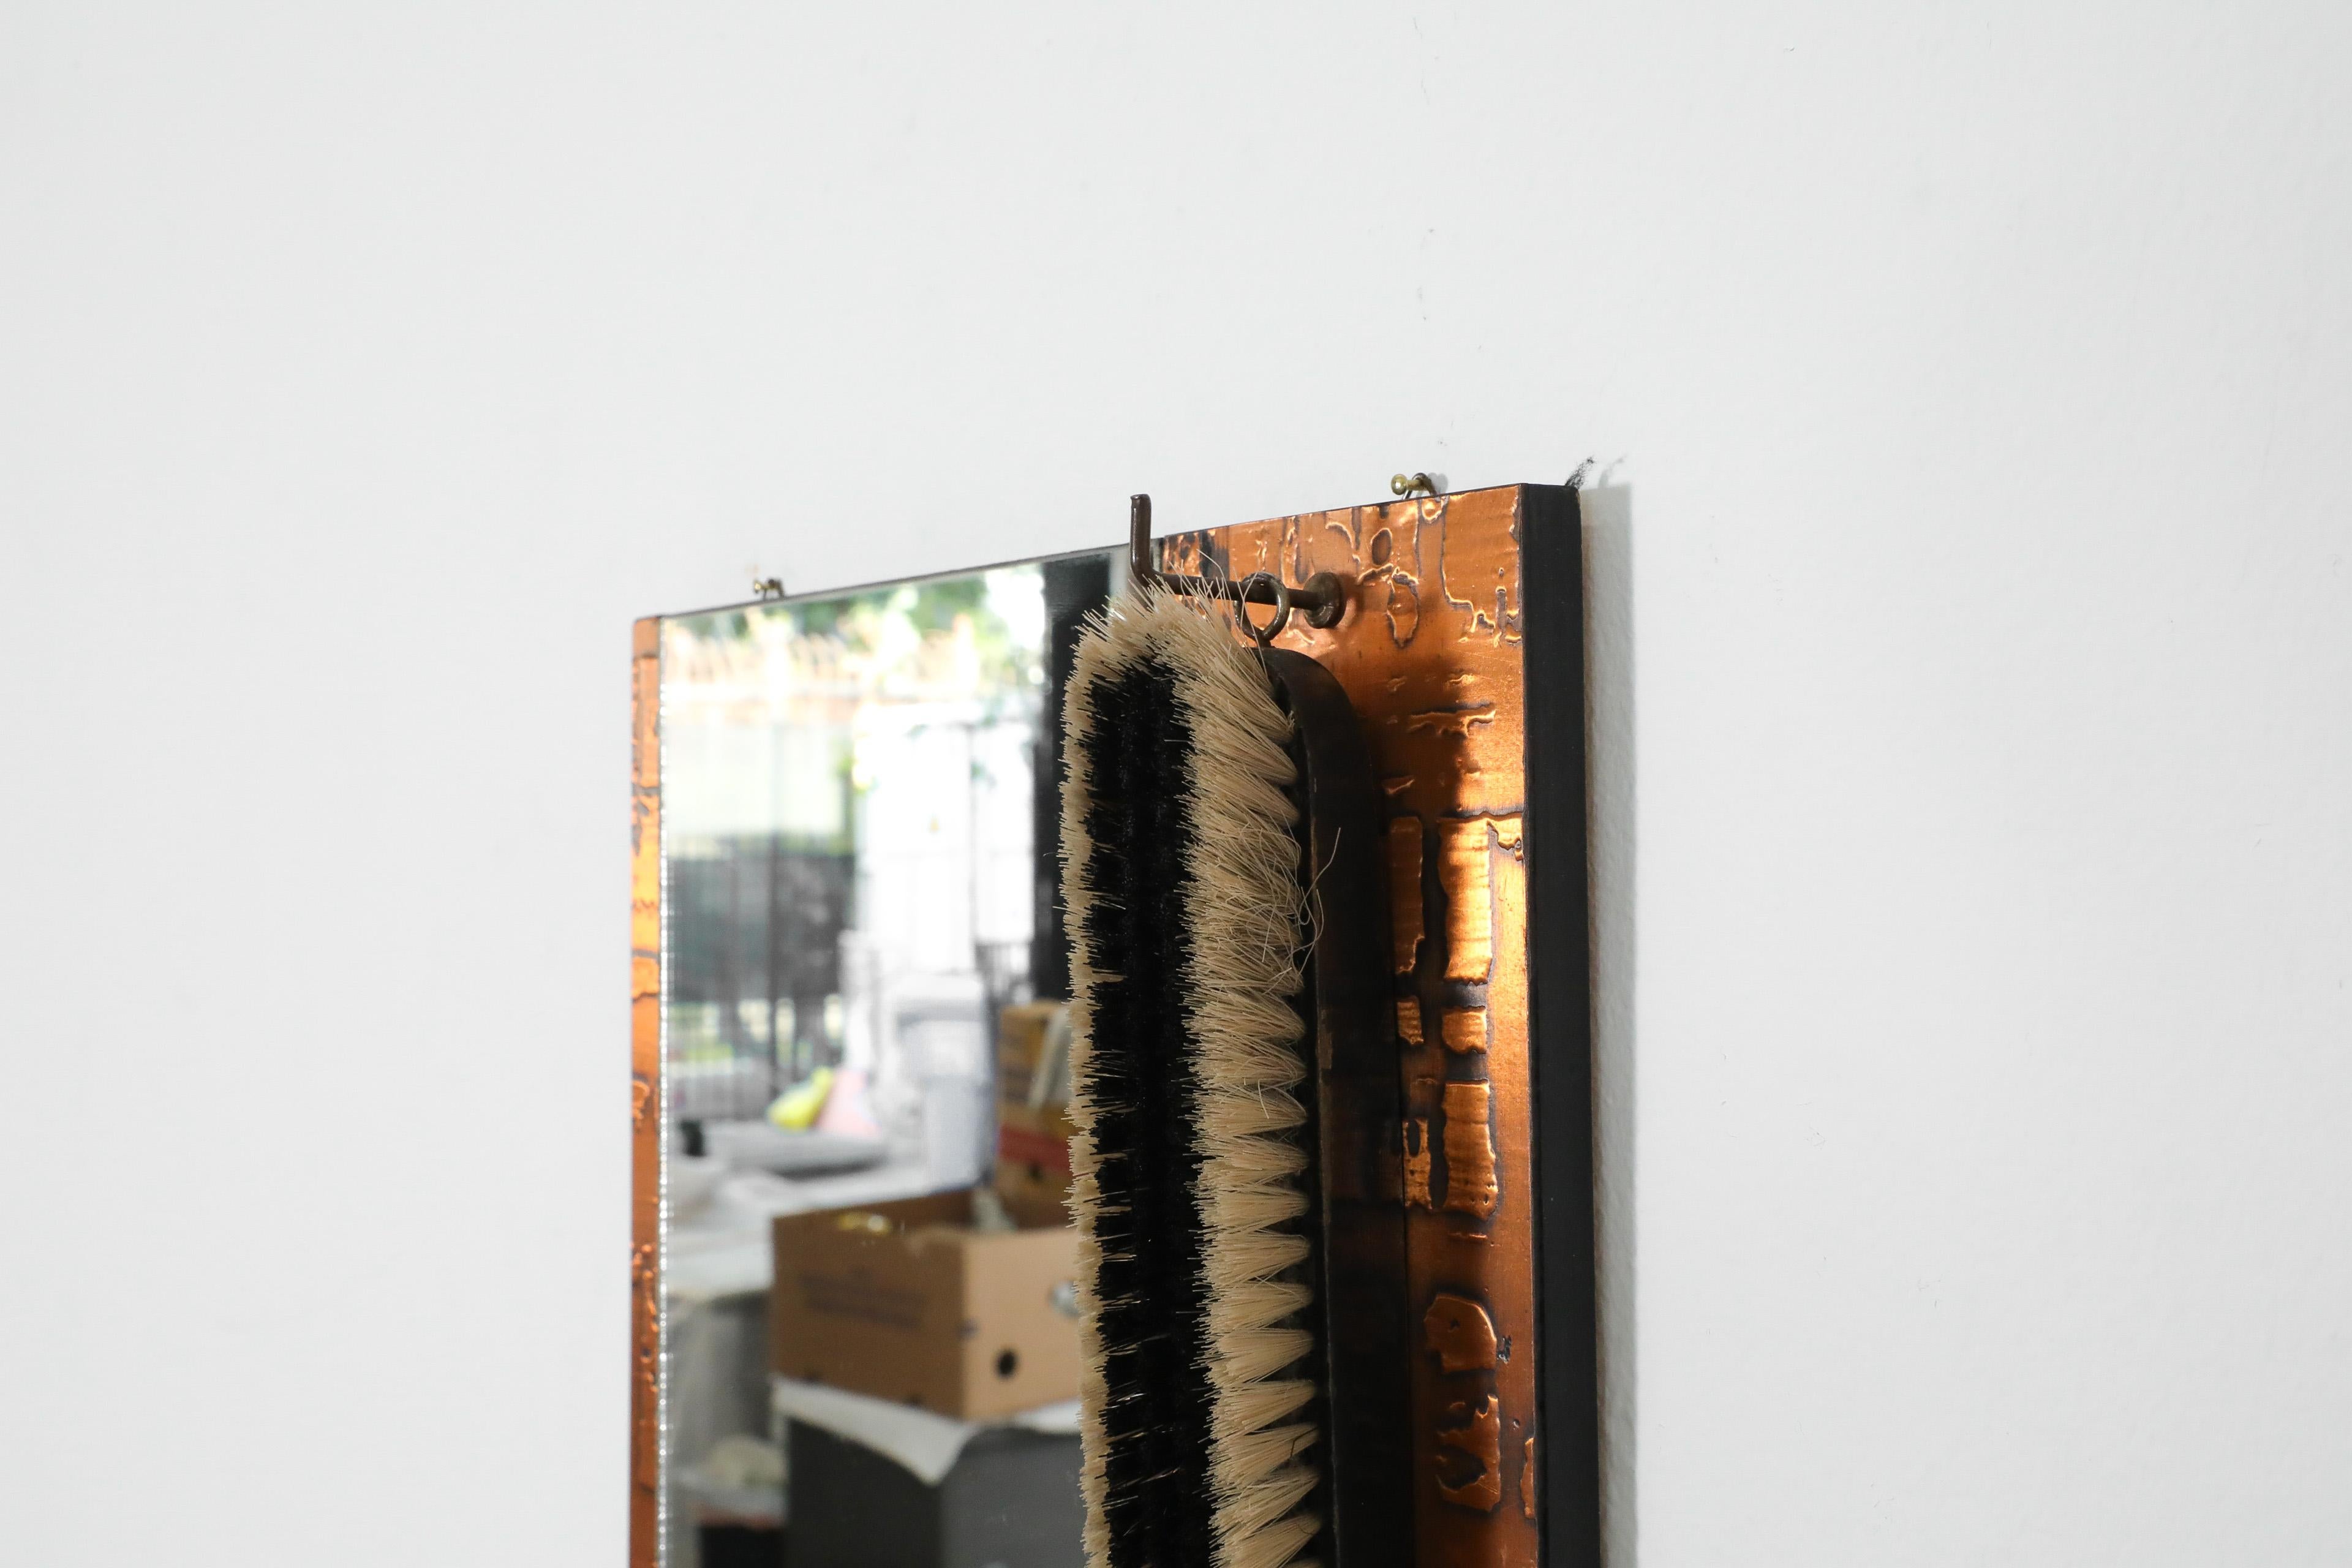 1970s, Santambrogio & De Berti styl Wall Mount Copper Butler's Mirror with Brush For Sale 1